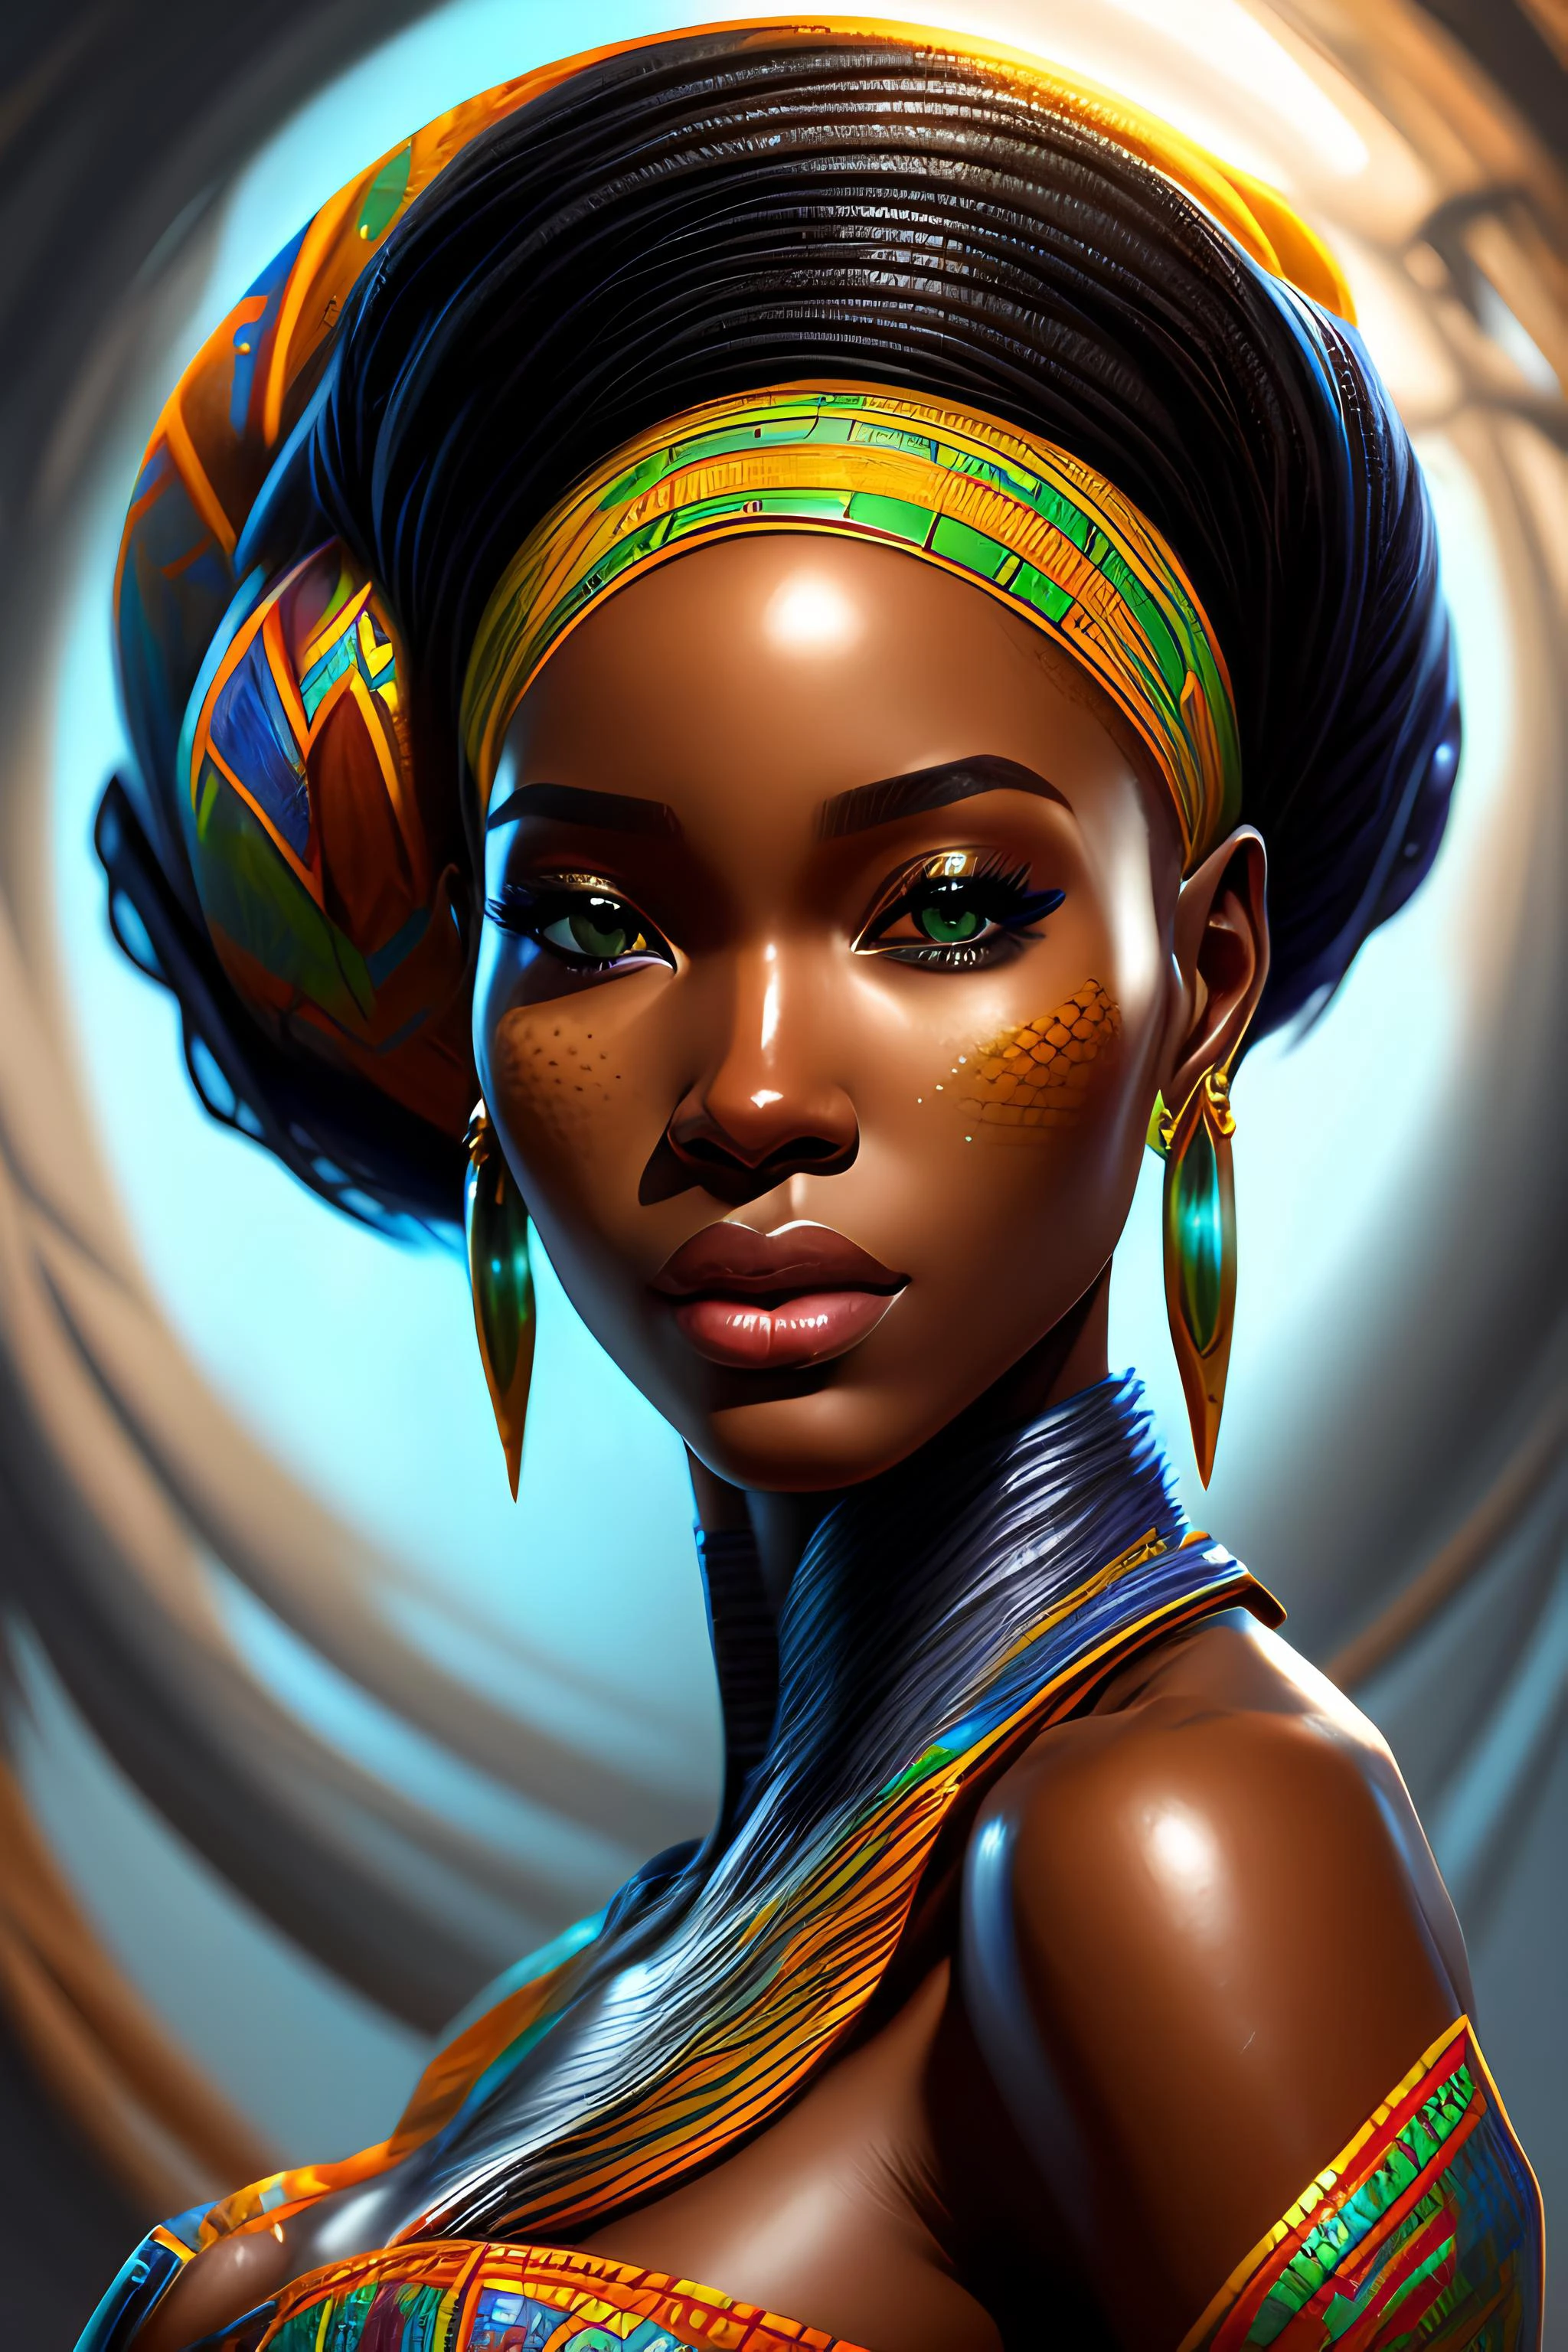 Uma mulher africana bonita, brilhante, altamente detalhado, pintura digital, estação de arte, arte conceitual, foco nitído, ilustração, by ross tran and vicente romero